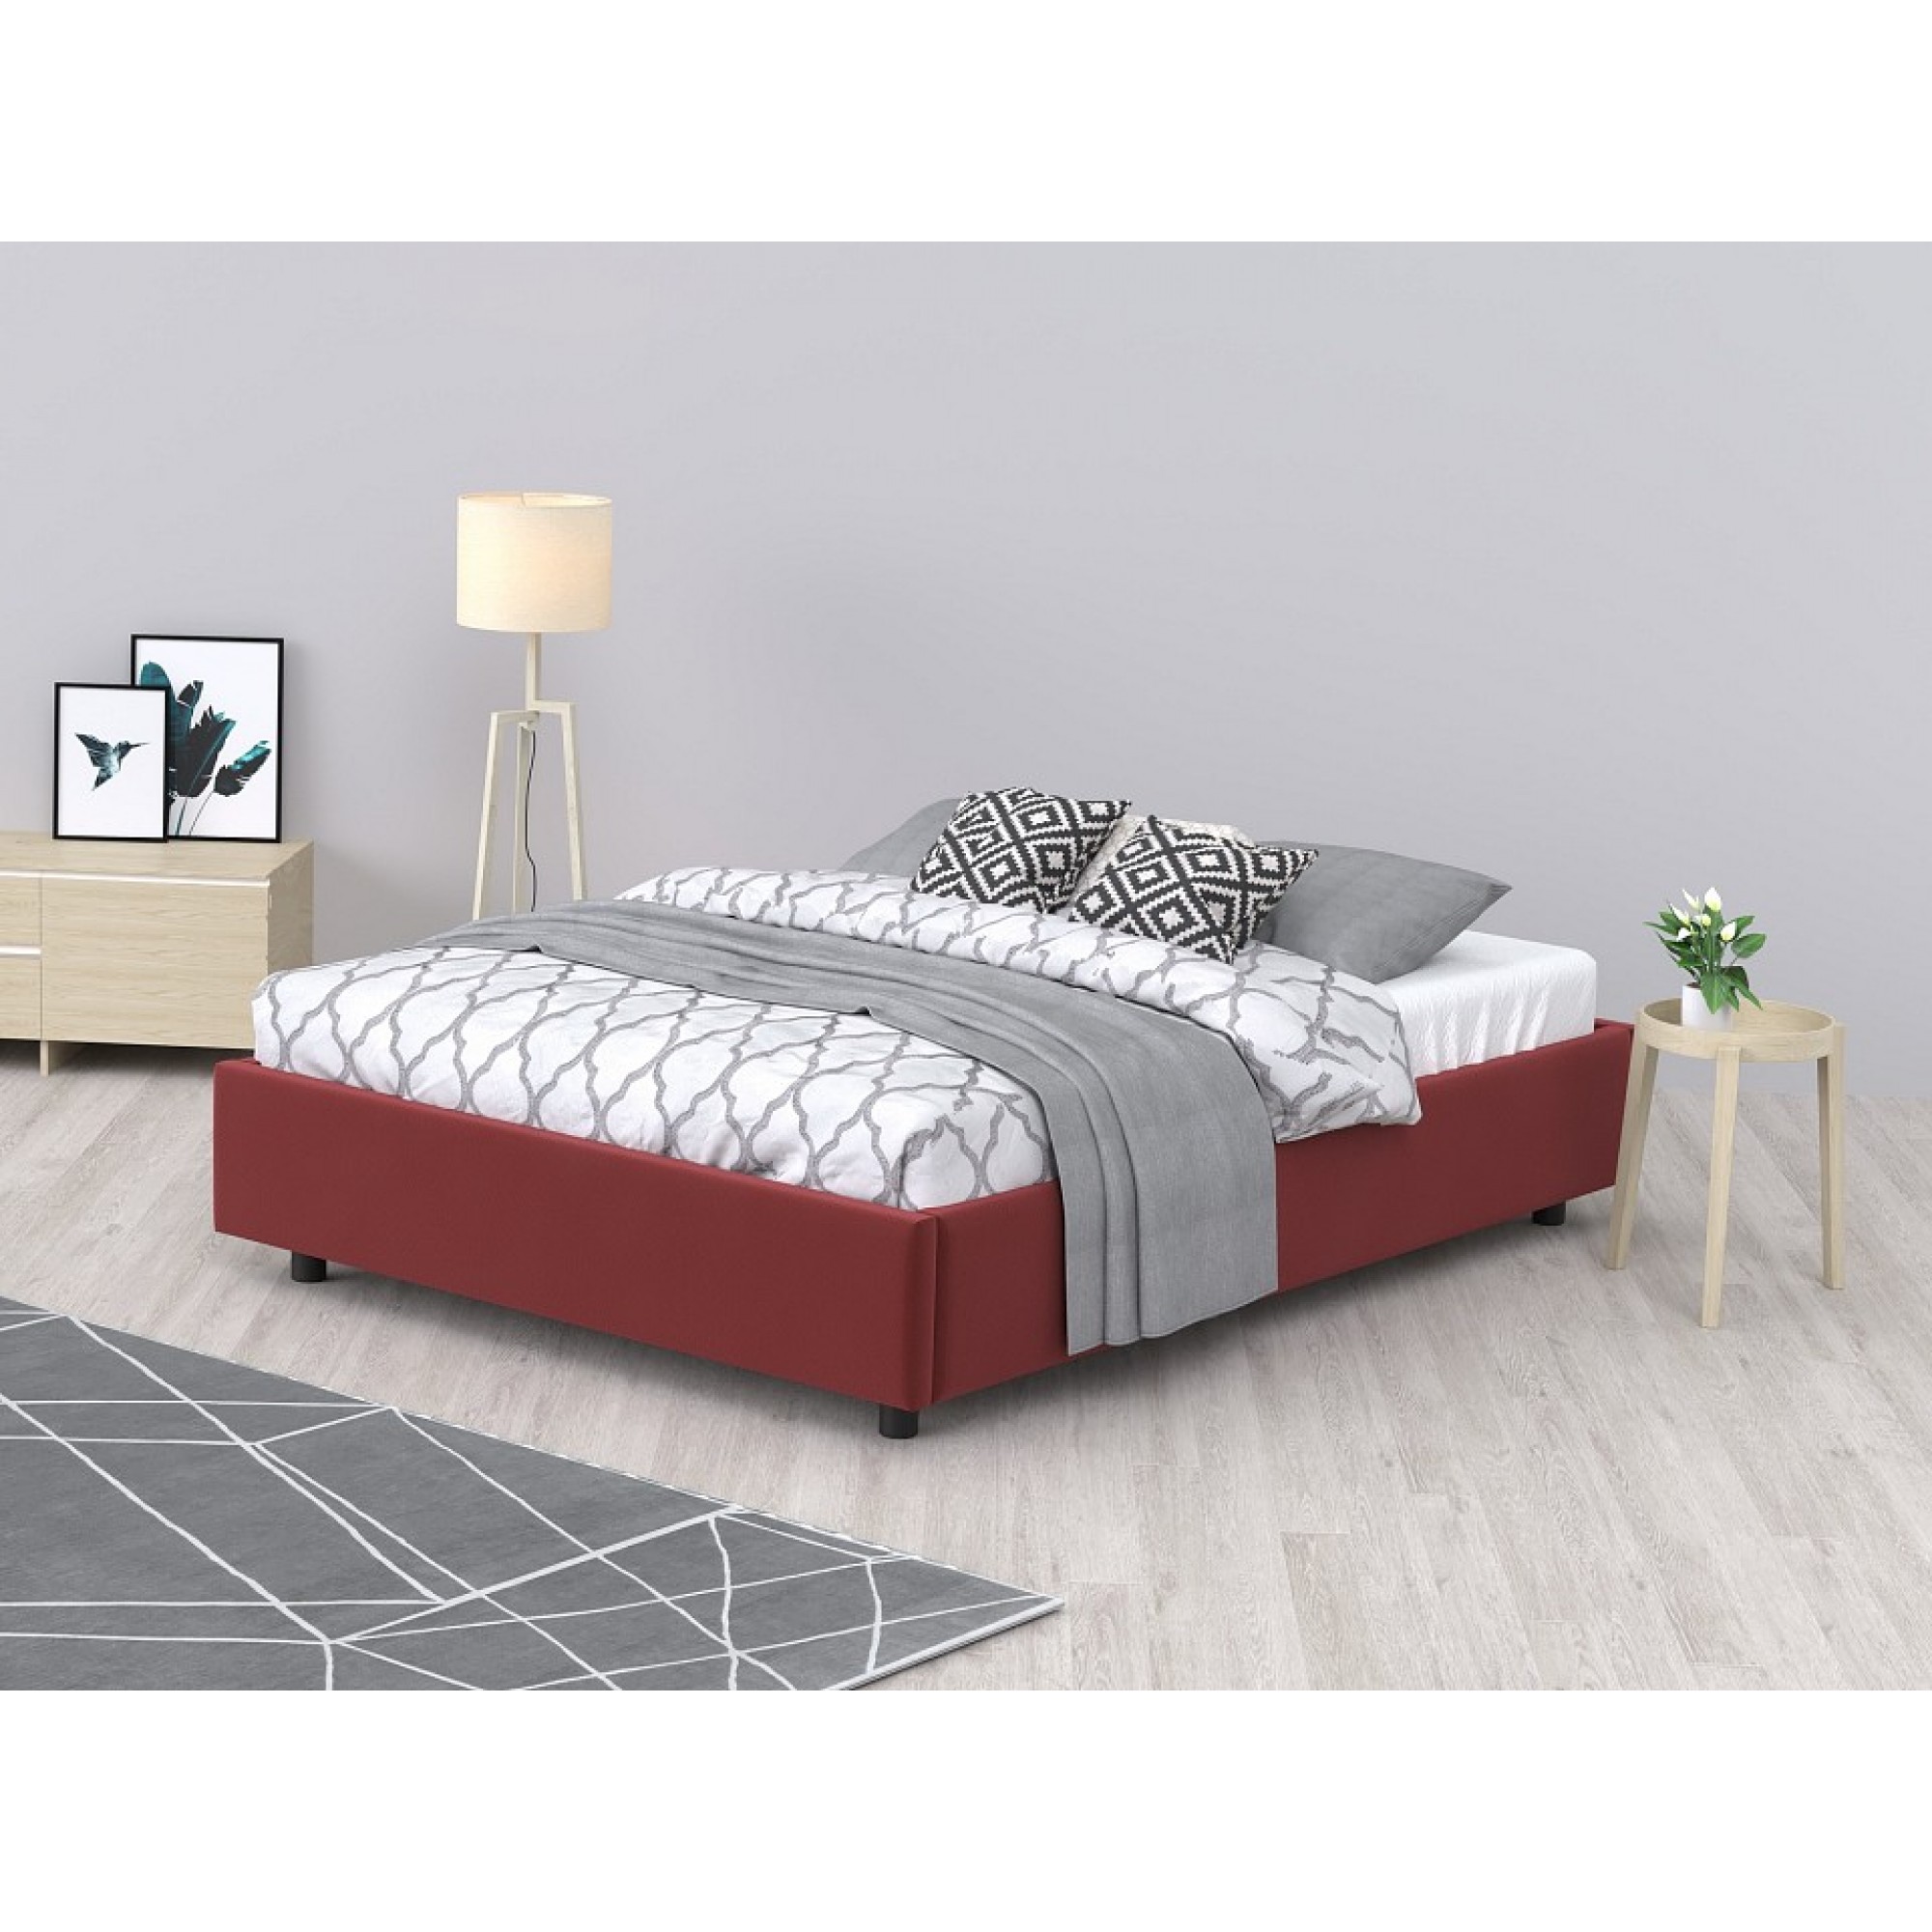 Кровать двуспальная SleepBox    AND_690set2504